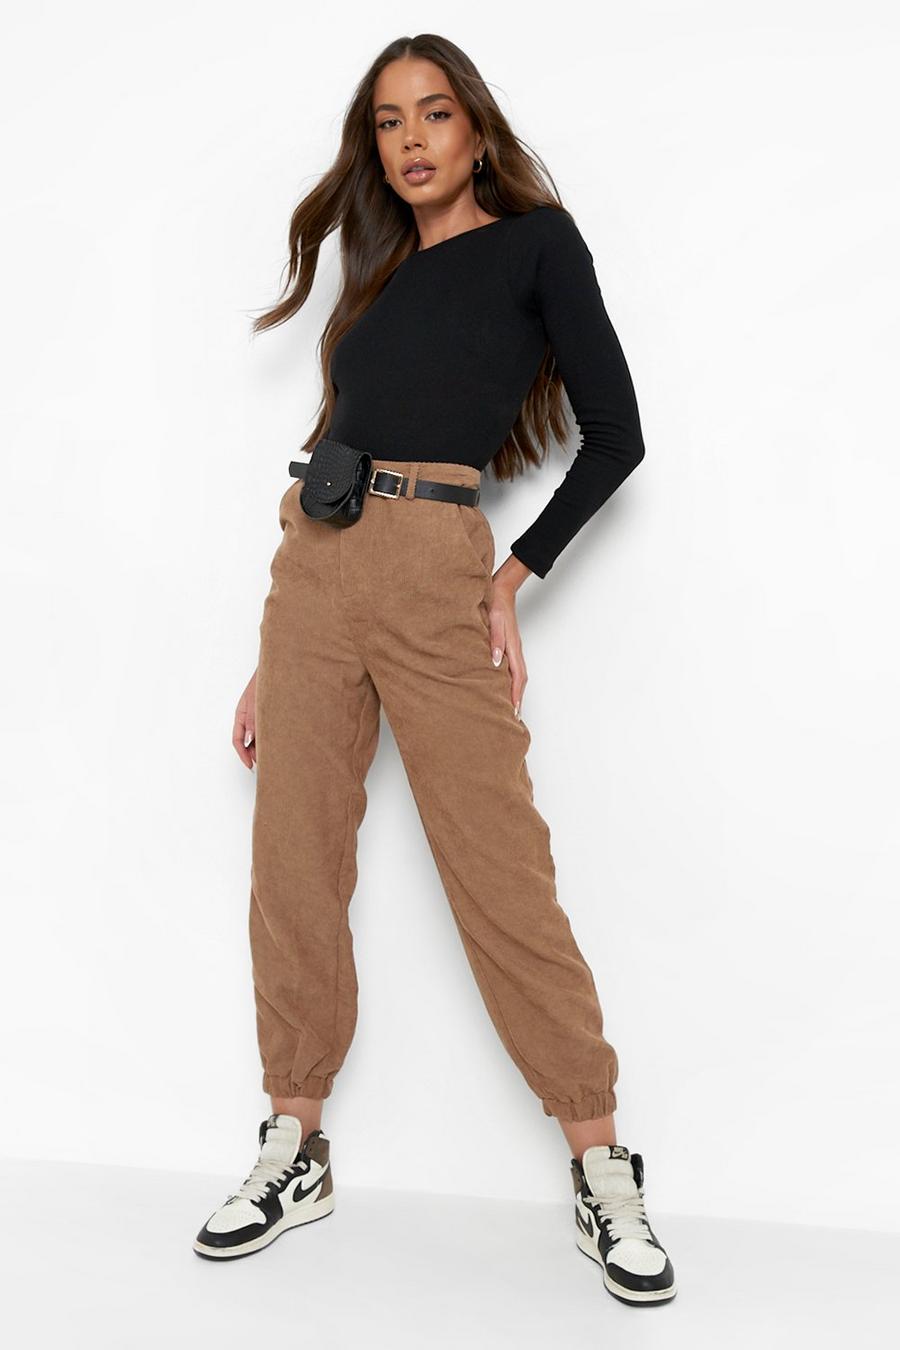 Tan brown Belt Bag Cord Utilty Trouser